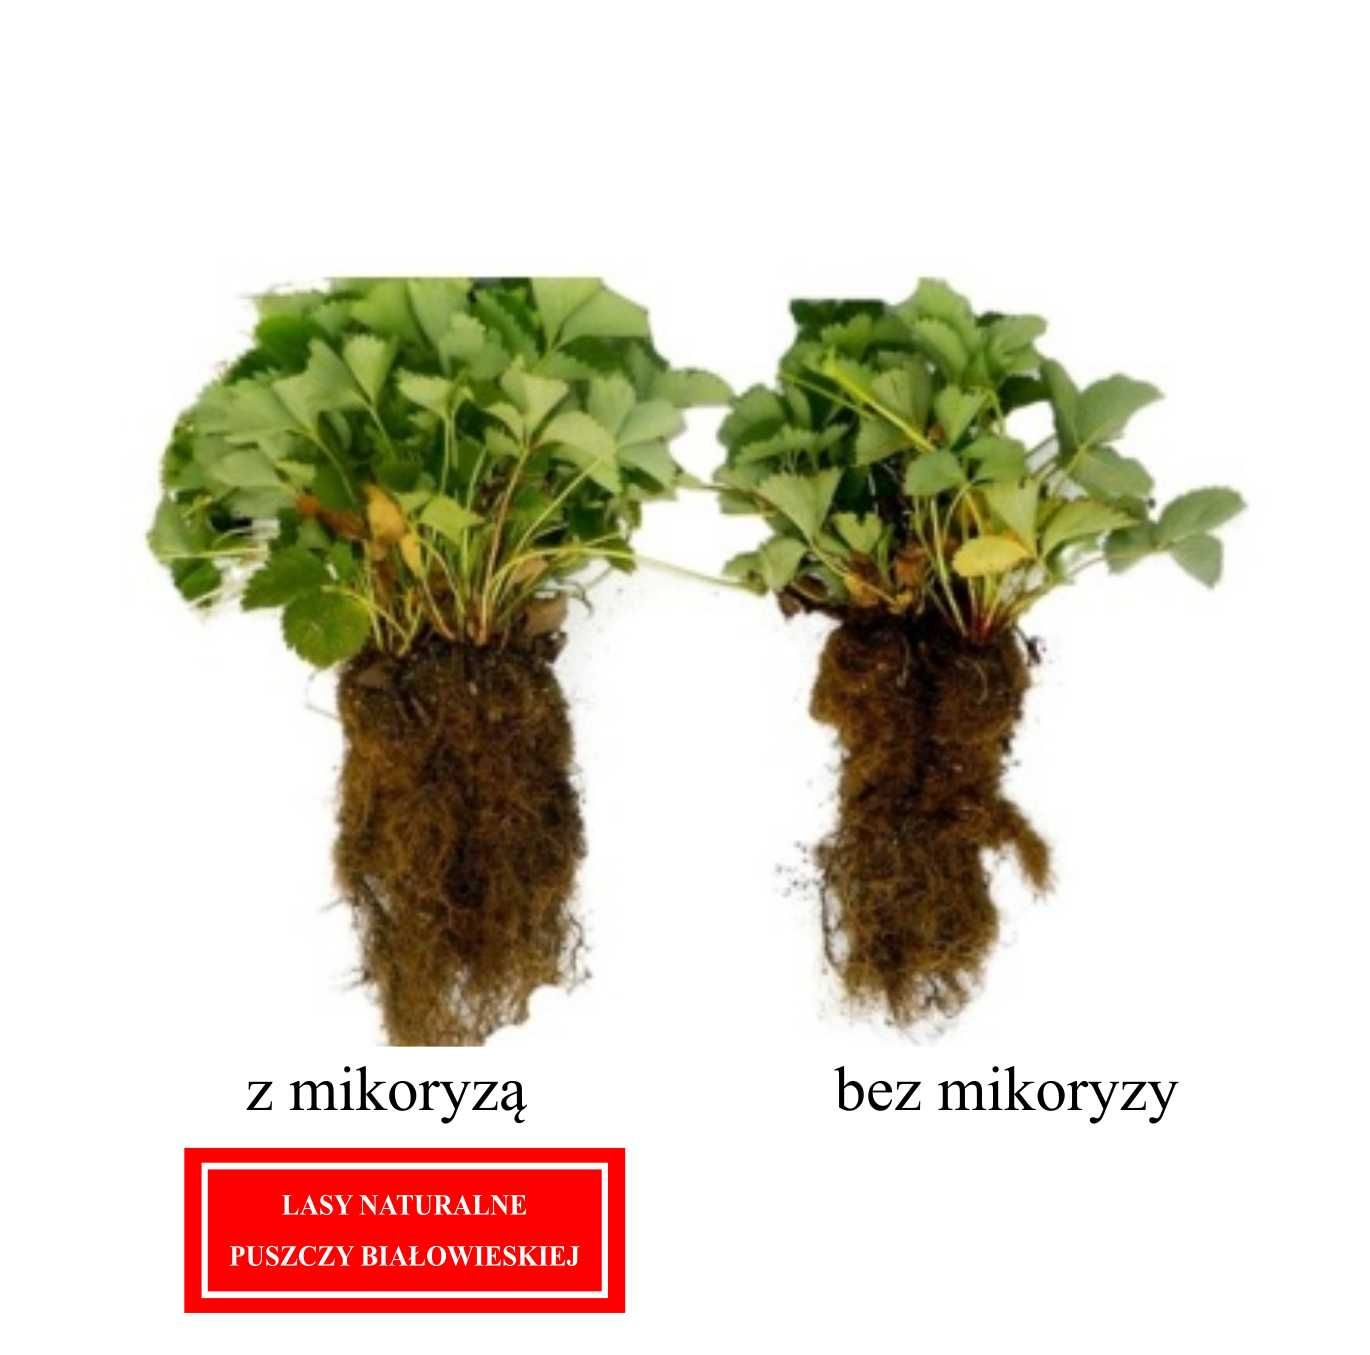 Mikoryza uniwersalna, trichoderma, bacillus subtilis 4 L/260 roślin